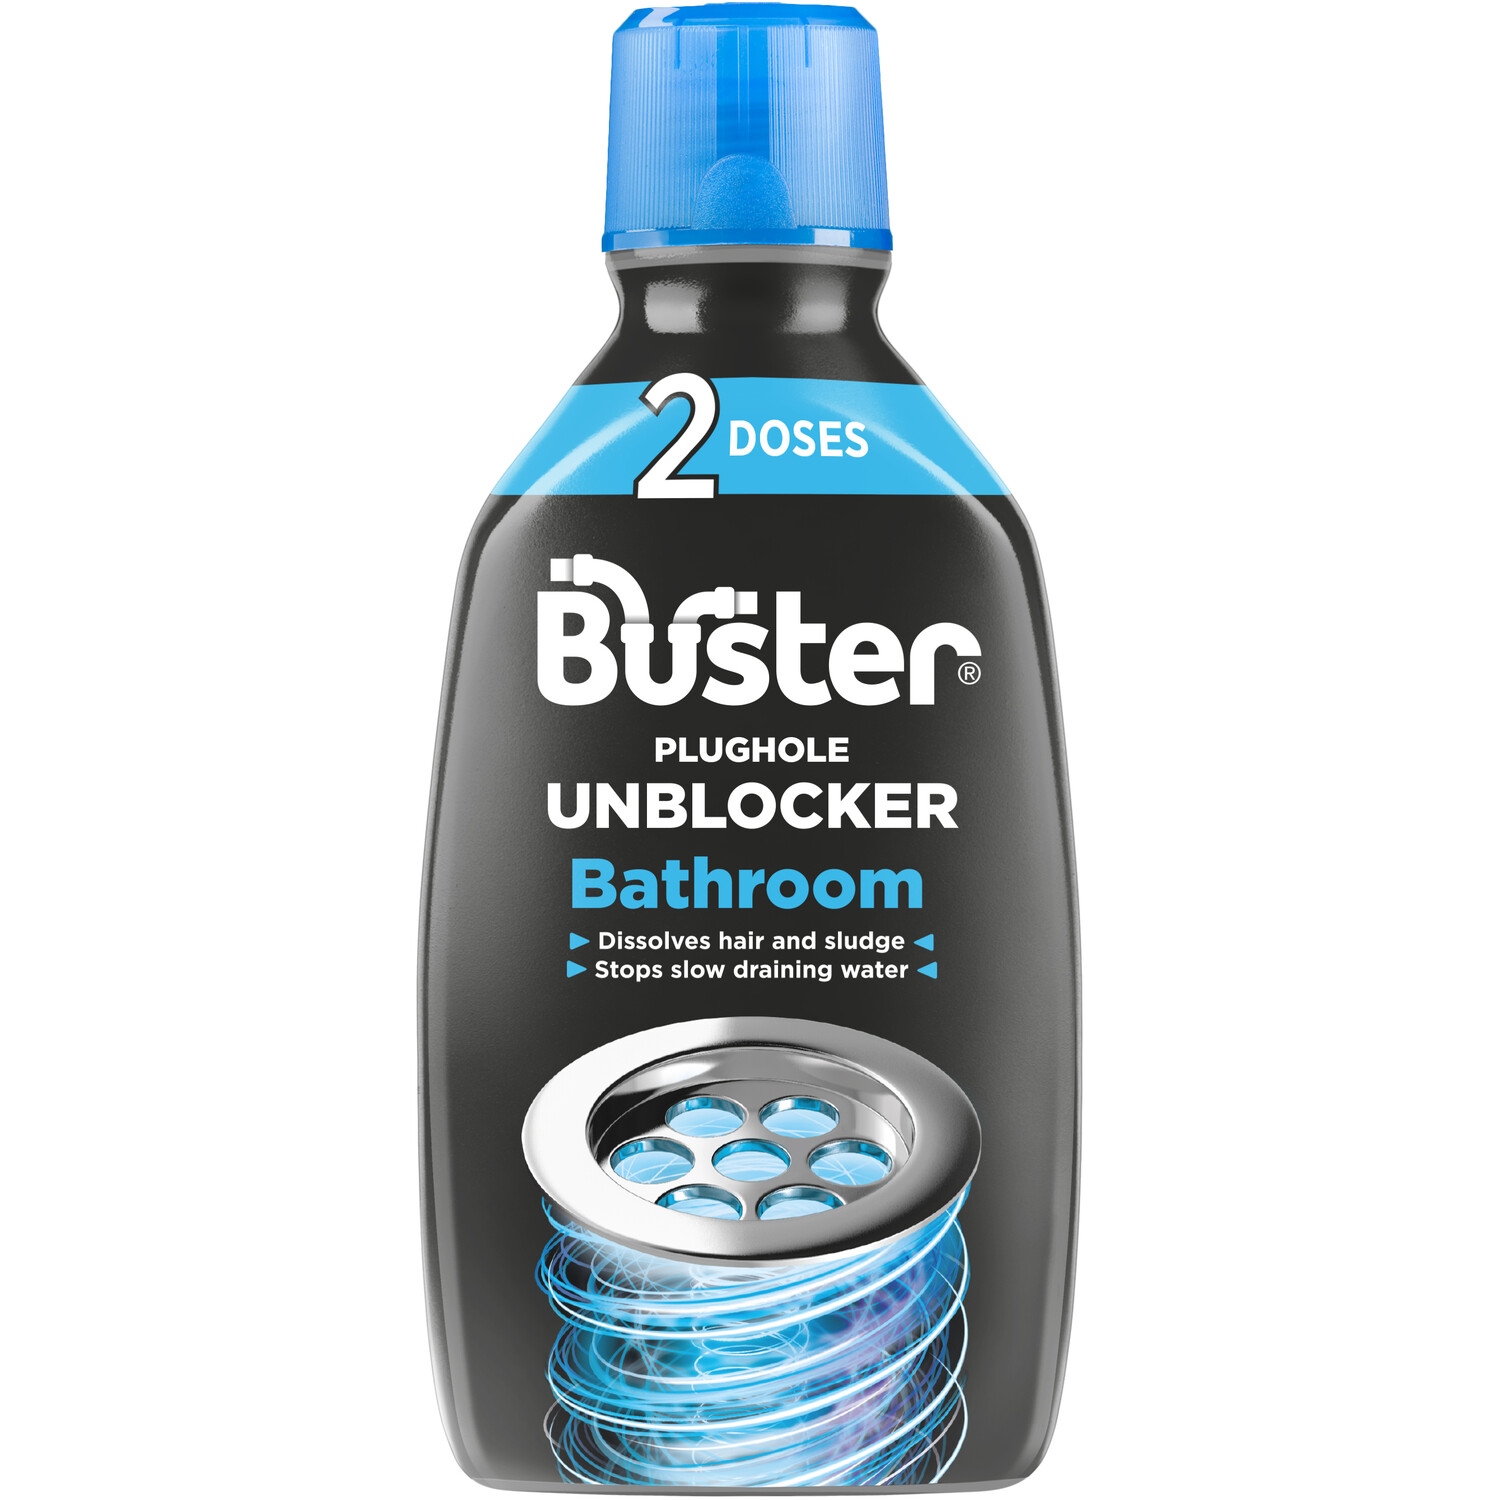 Buster Bathroom Plughole Unblocker 600ml Image 1